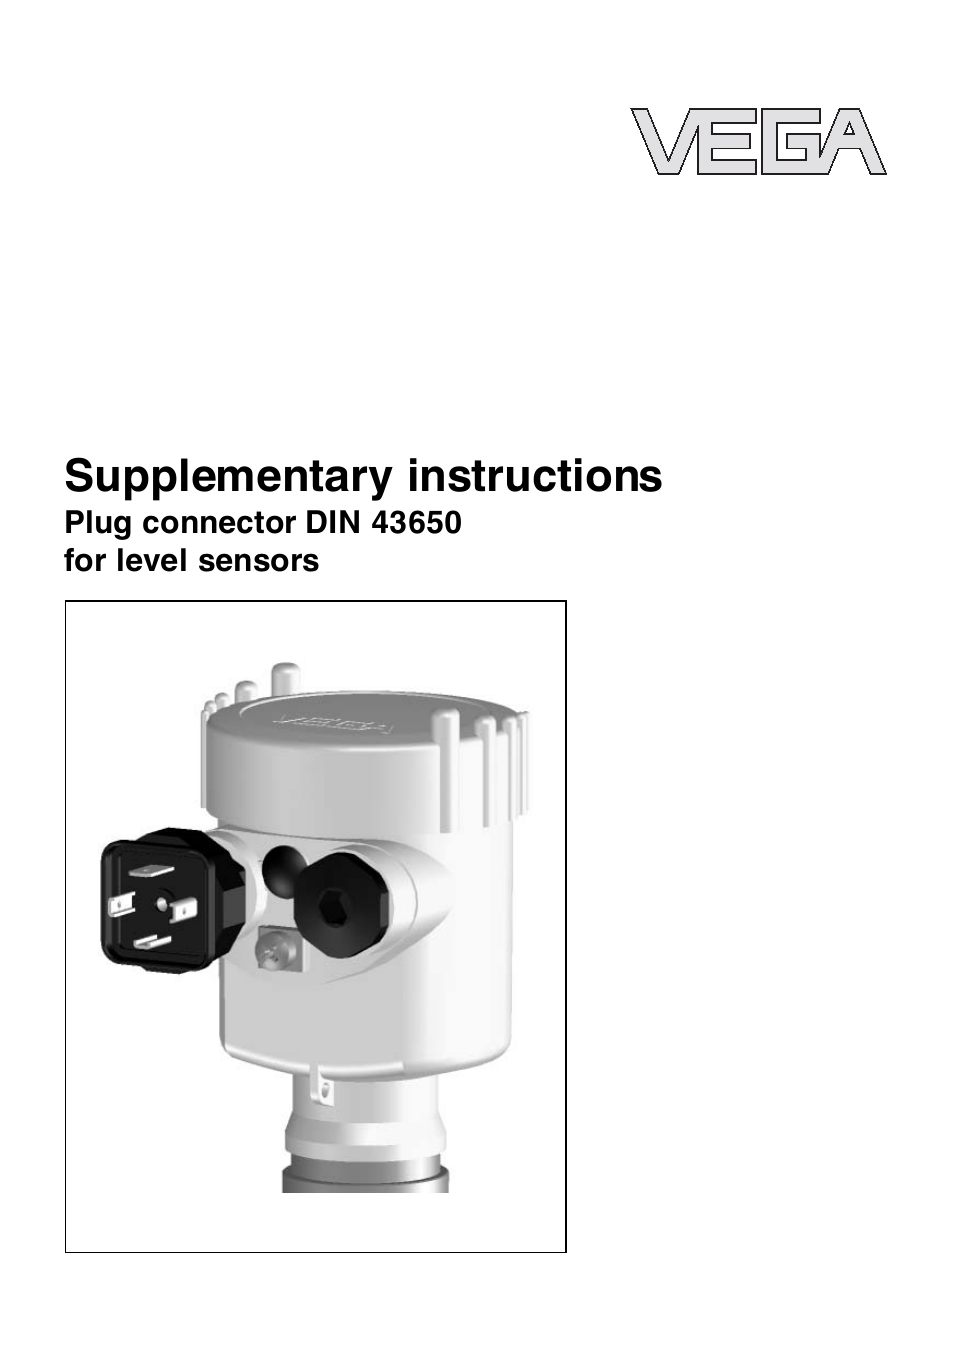 Plug connector DIN 43650 for level sensors